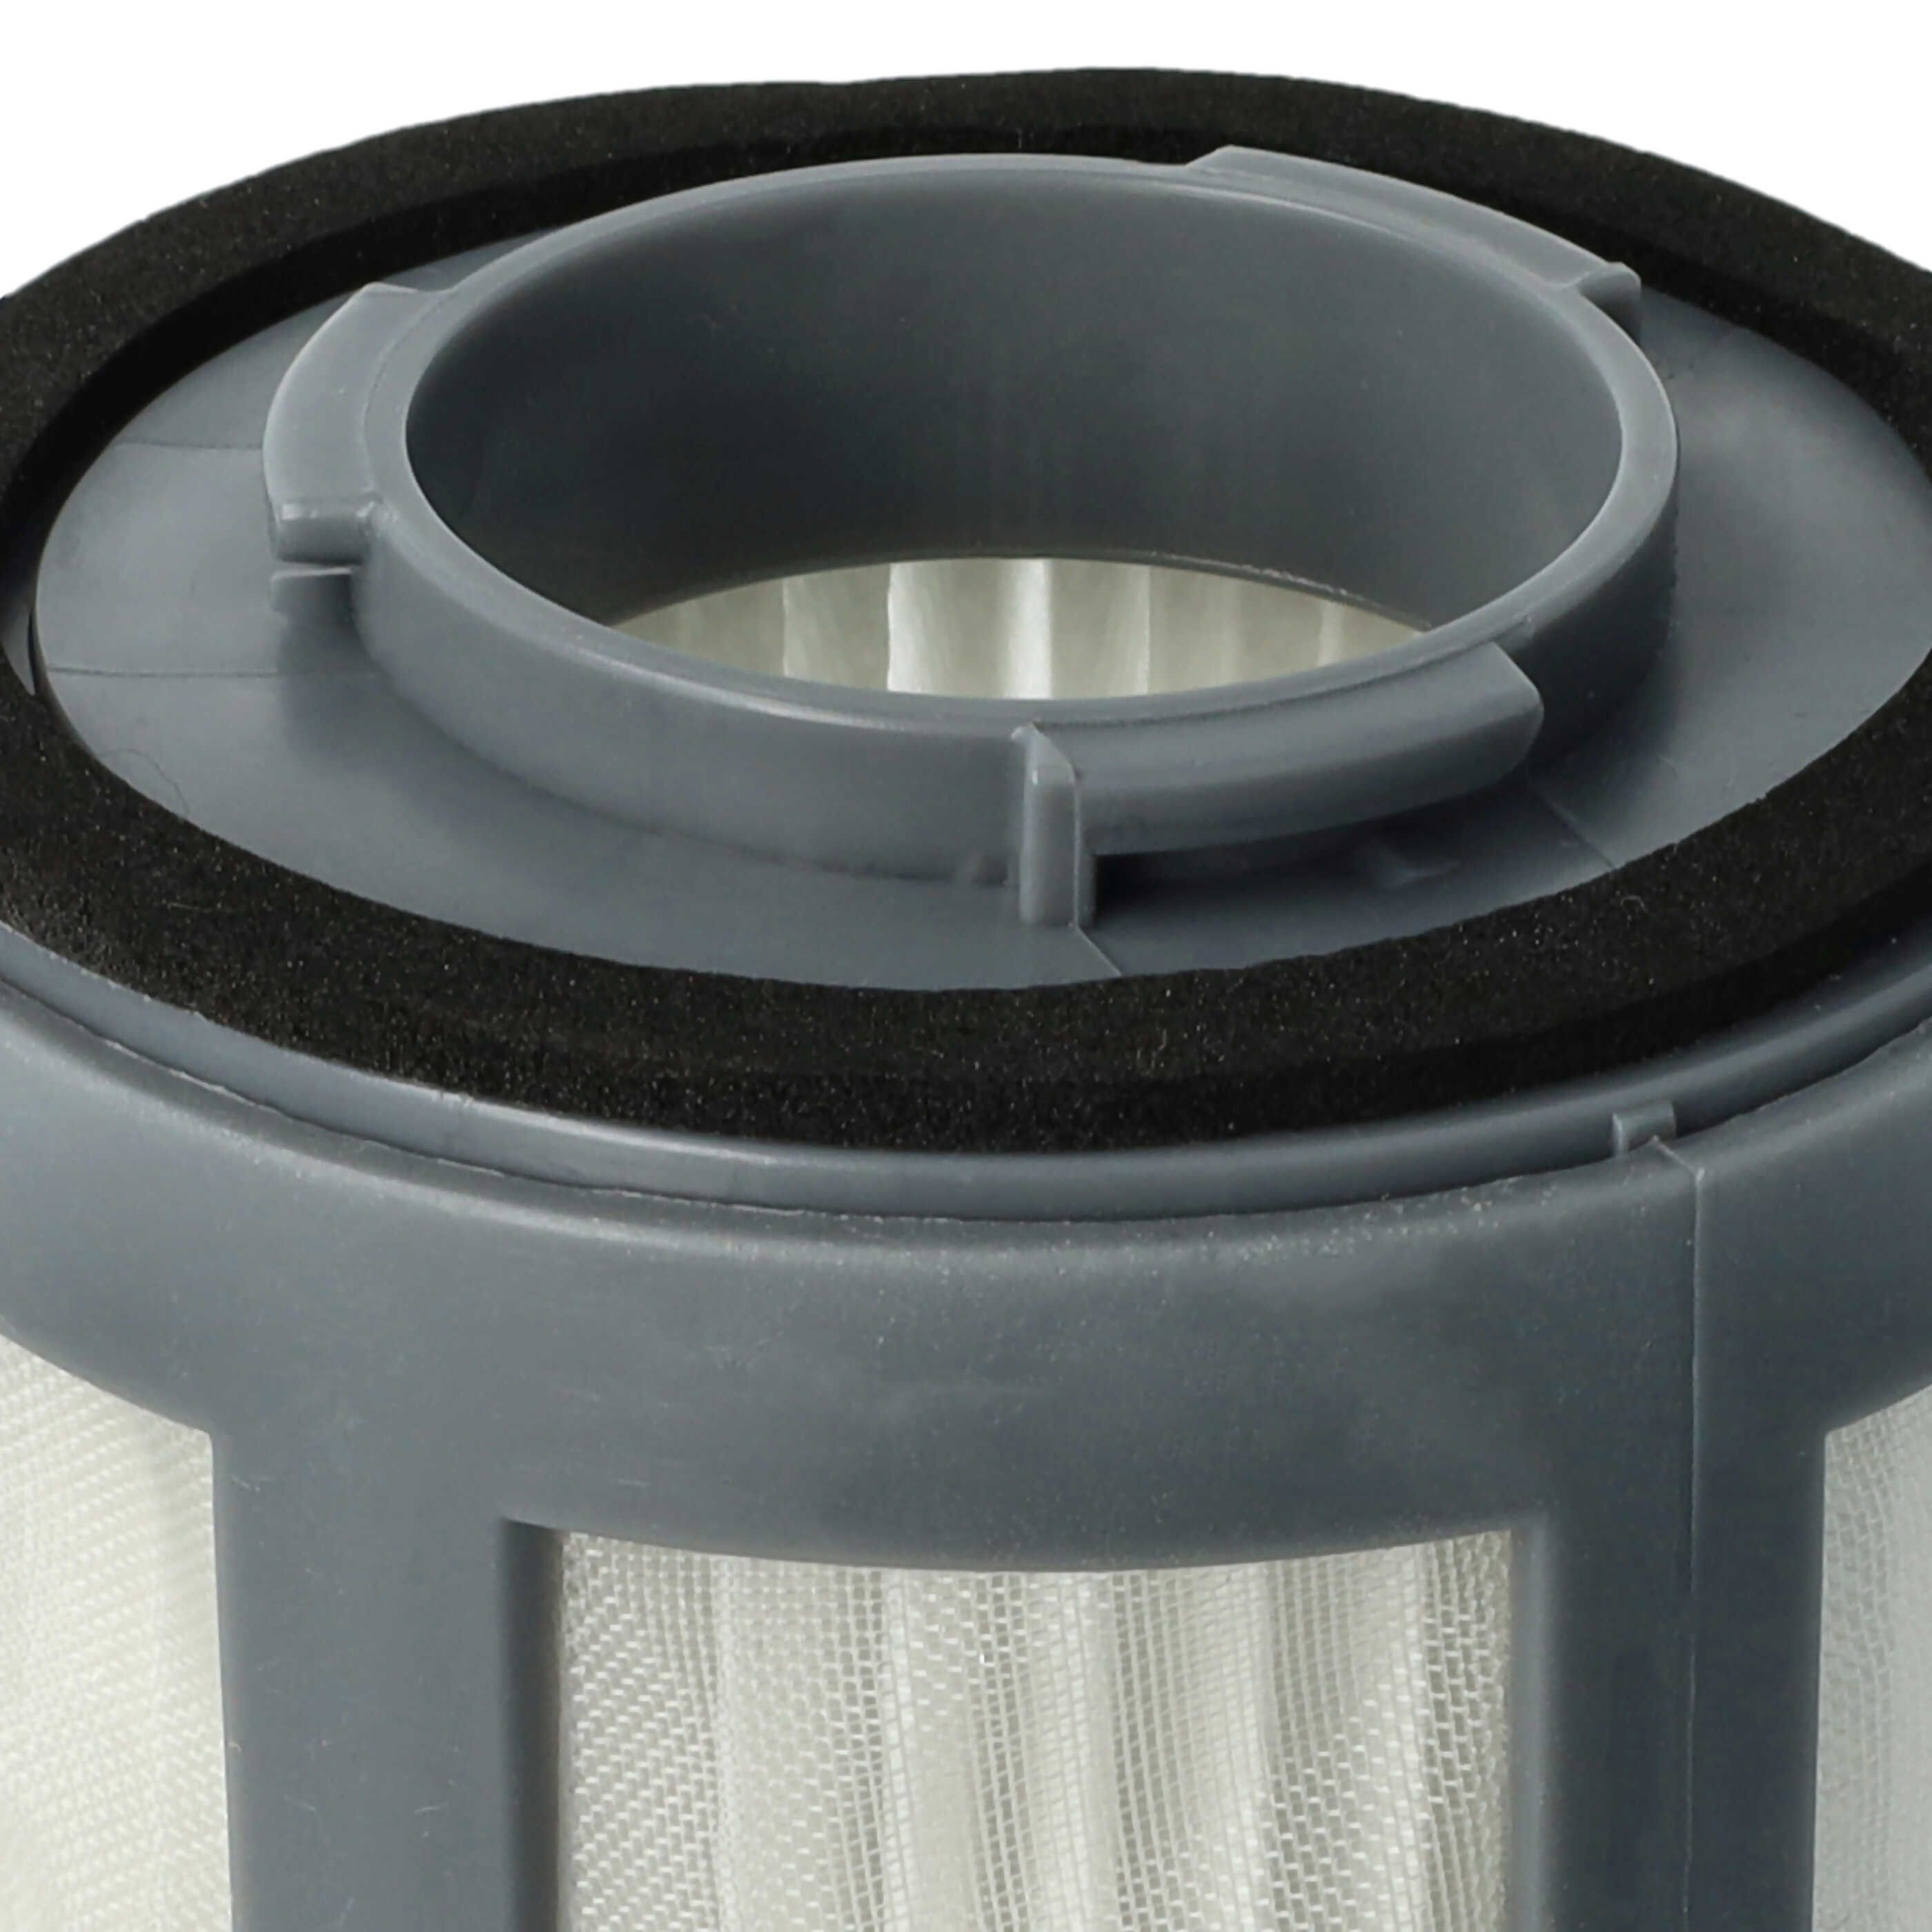 Filtro para aspiradora BS 9012 CB Eco Cyclon Bomann, etc. - elemento filtrante (filtro nailon + filtro HEPA) n